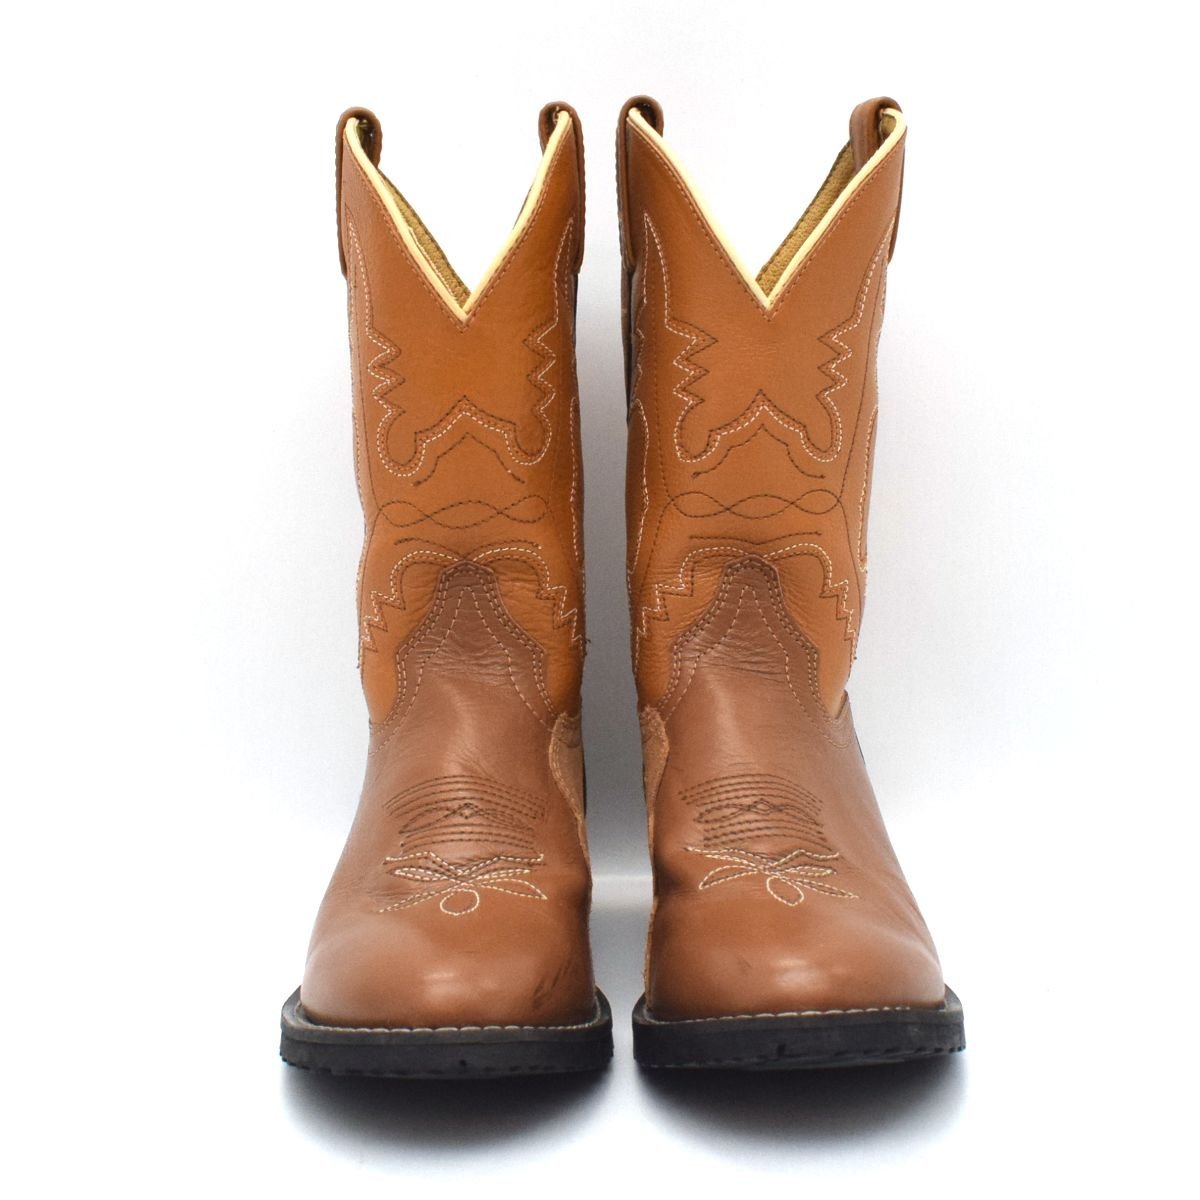 Tony Lama Tony Lama western boots SIZE:5 1/2 ( approximately 23cm) leather original leather [S207090]